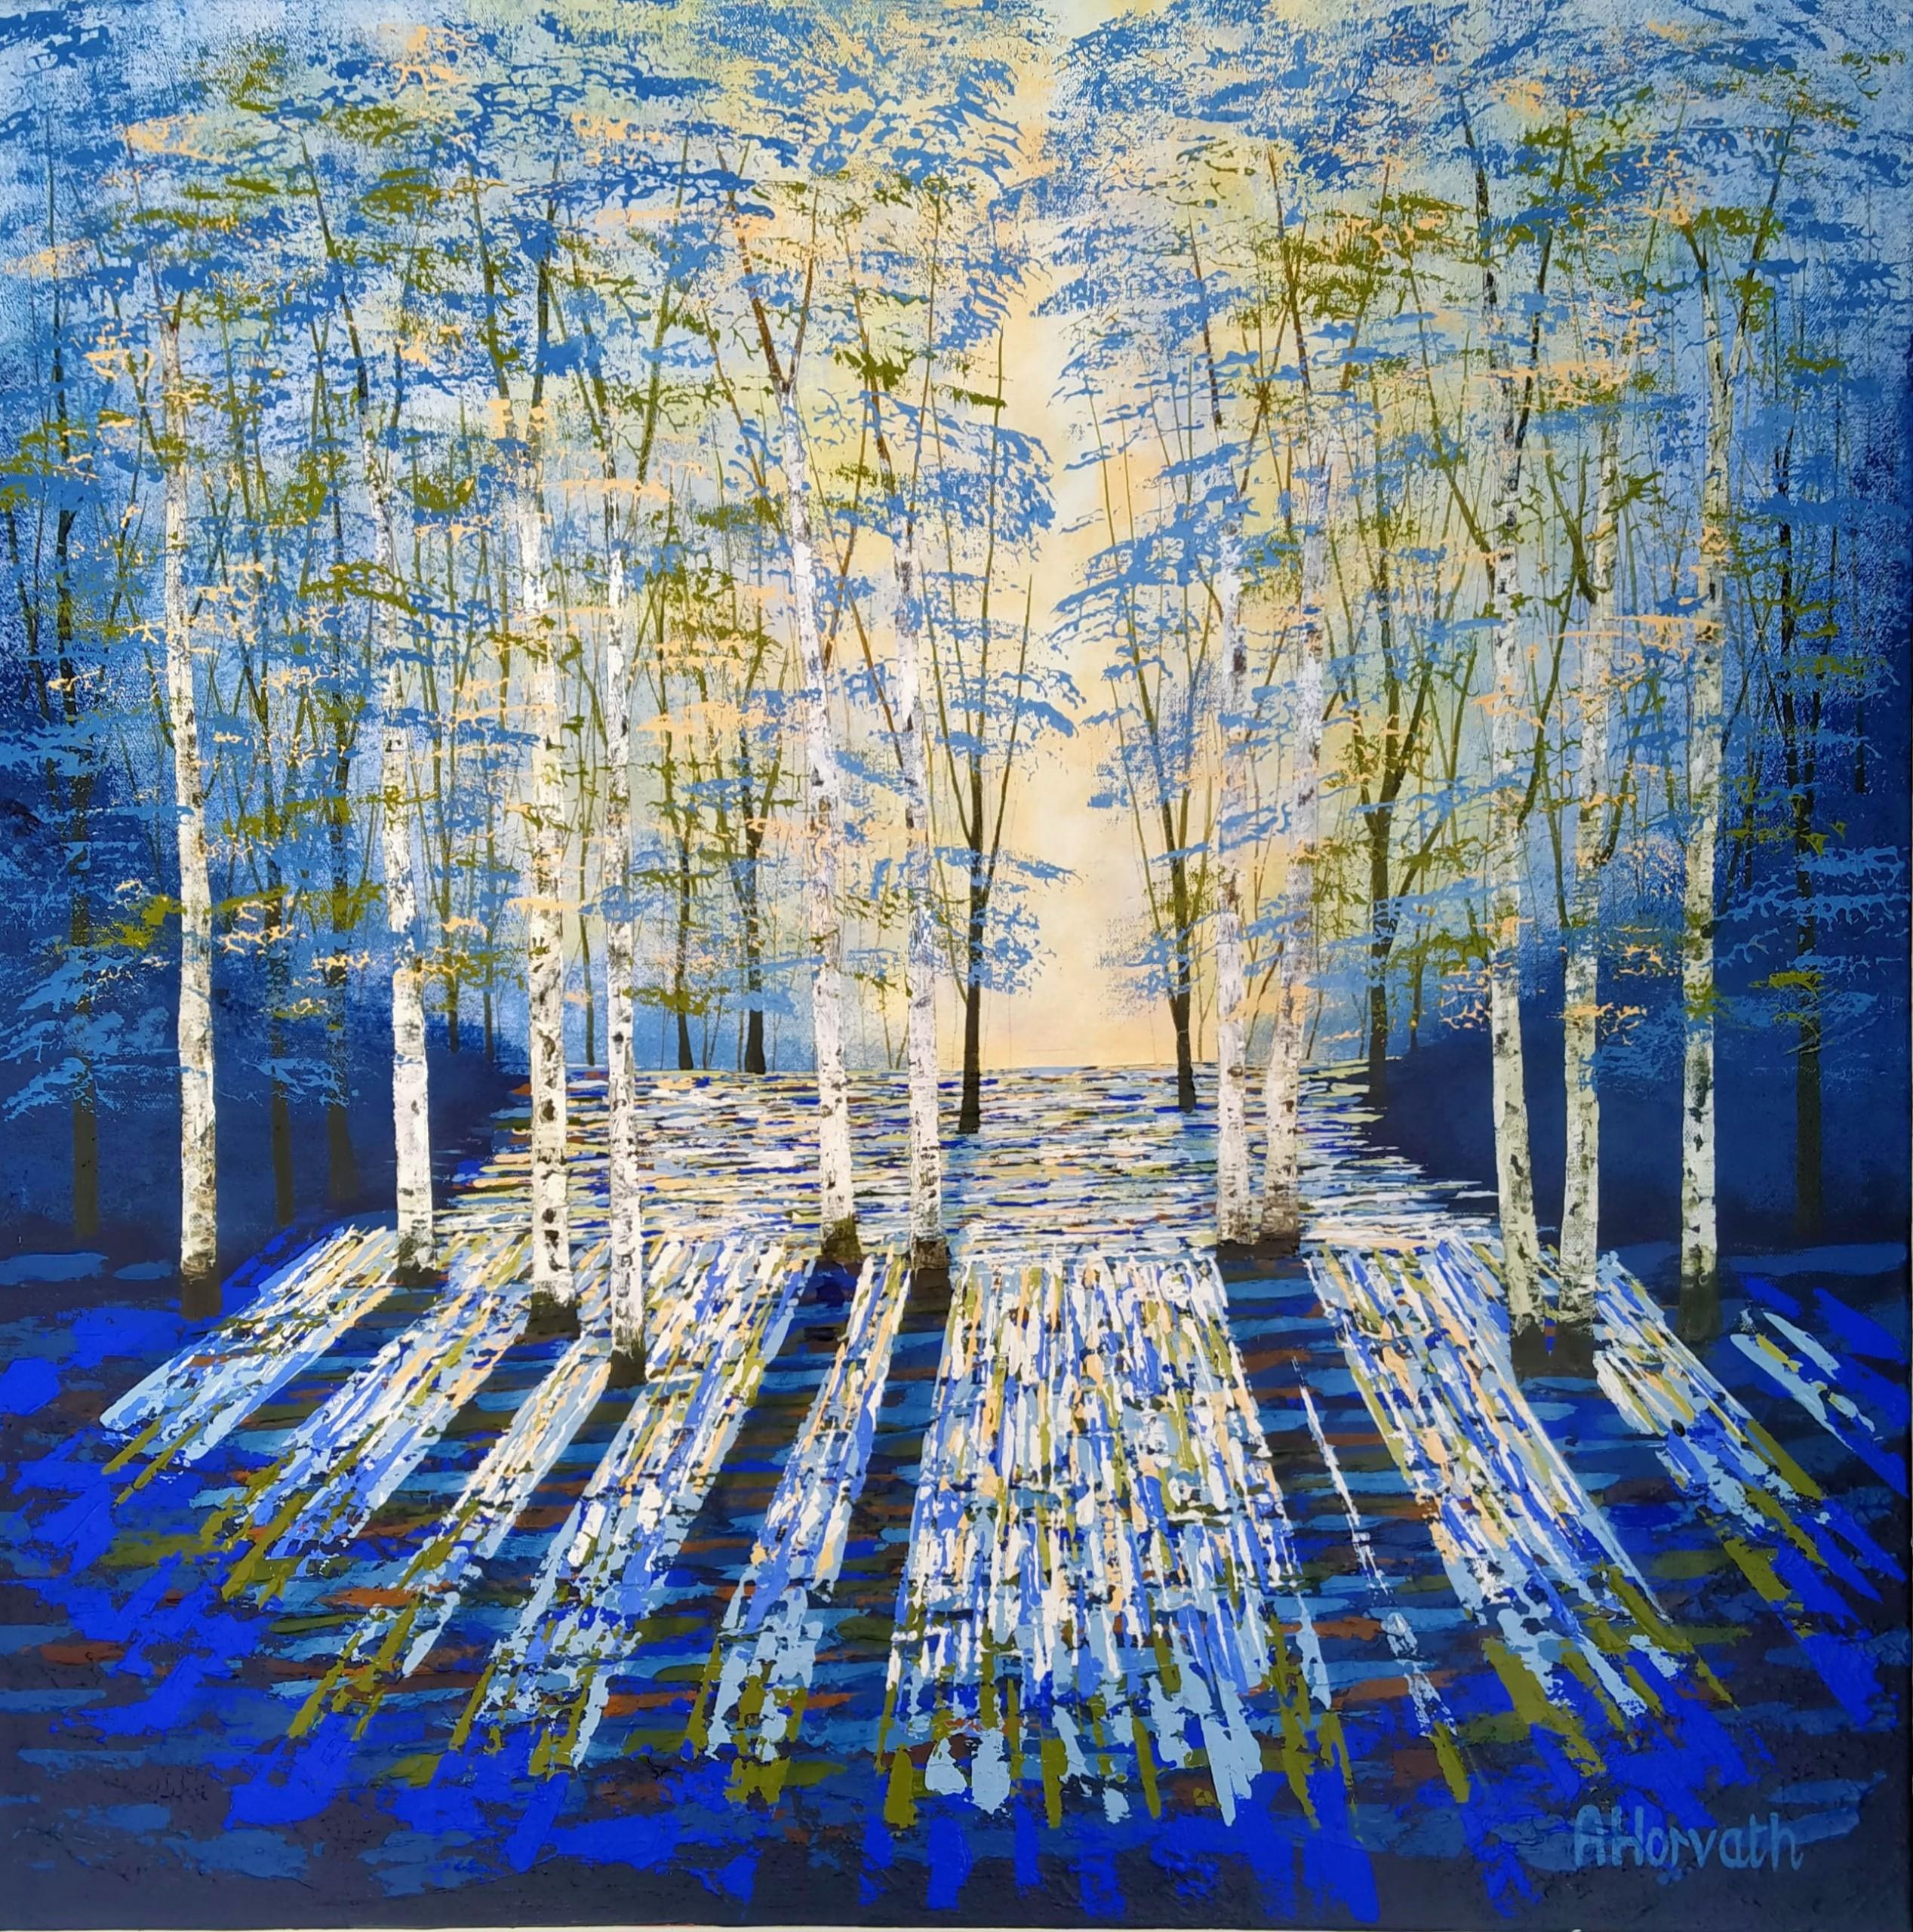 Landscape Painting Amanda Hovarth - Peinture bleue de soirée dorée, peinture de bois bleue, art contemporain bleu, art forêt